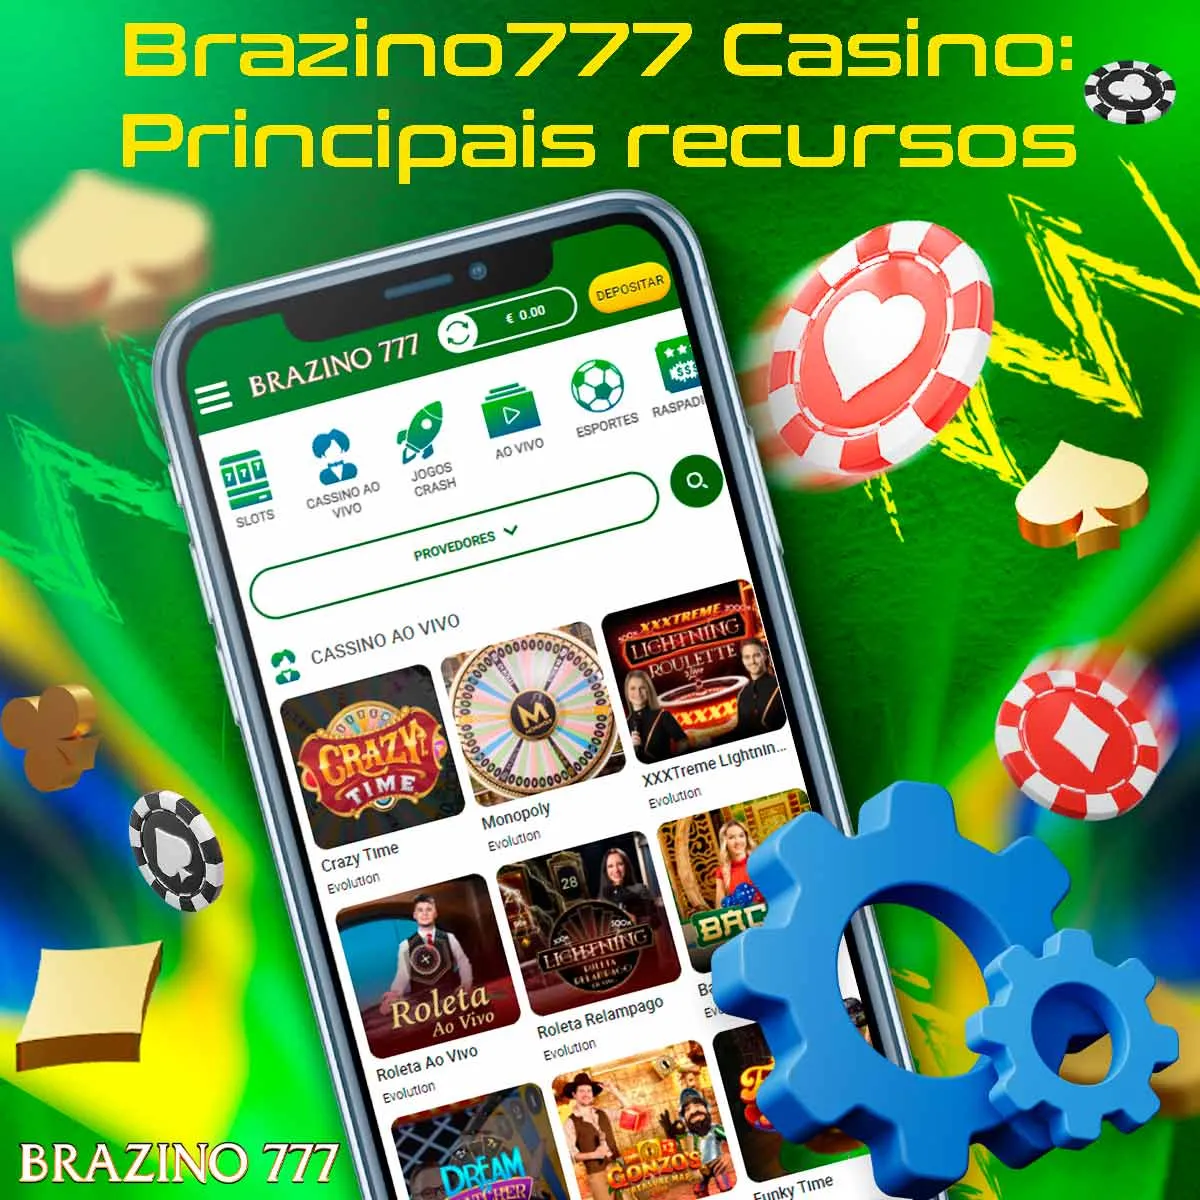 Uma visão geral dos principais recursos do cassino Brazino777 no Brasil